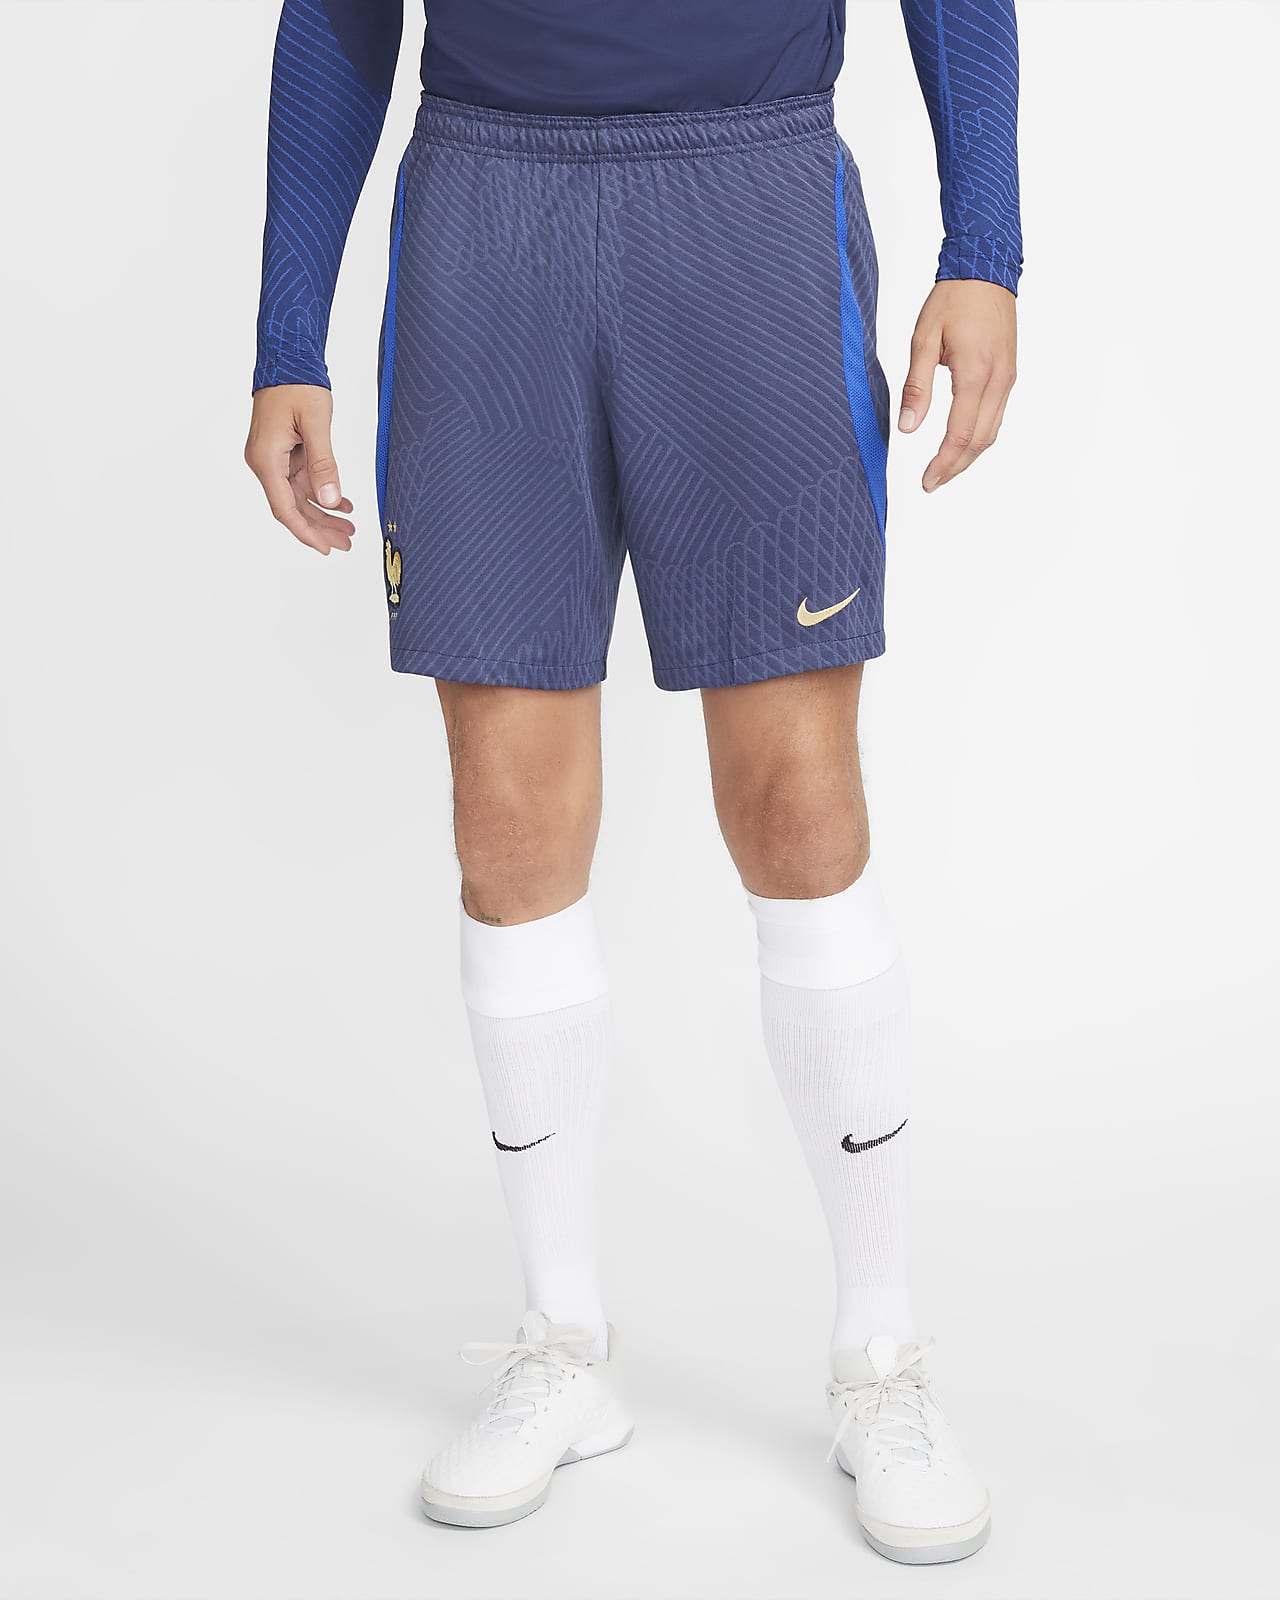 FFF Strike 男款 Nike Dri-FIT 針織足球短褲